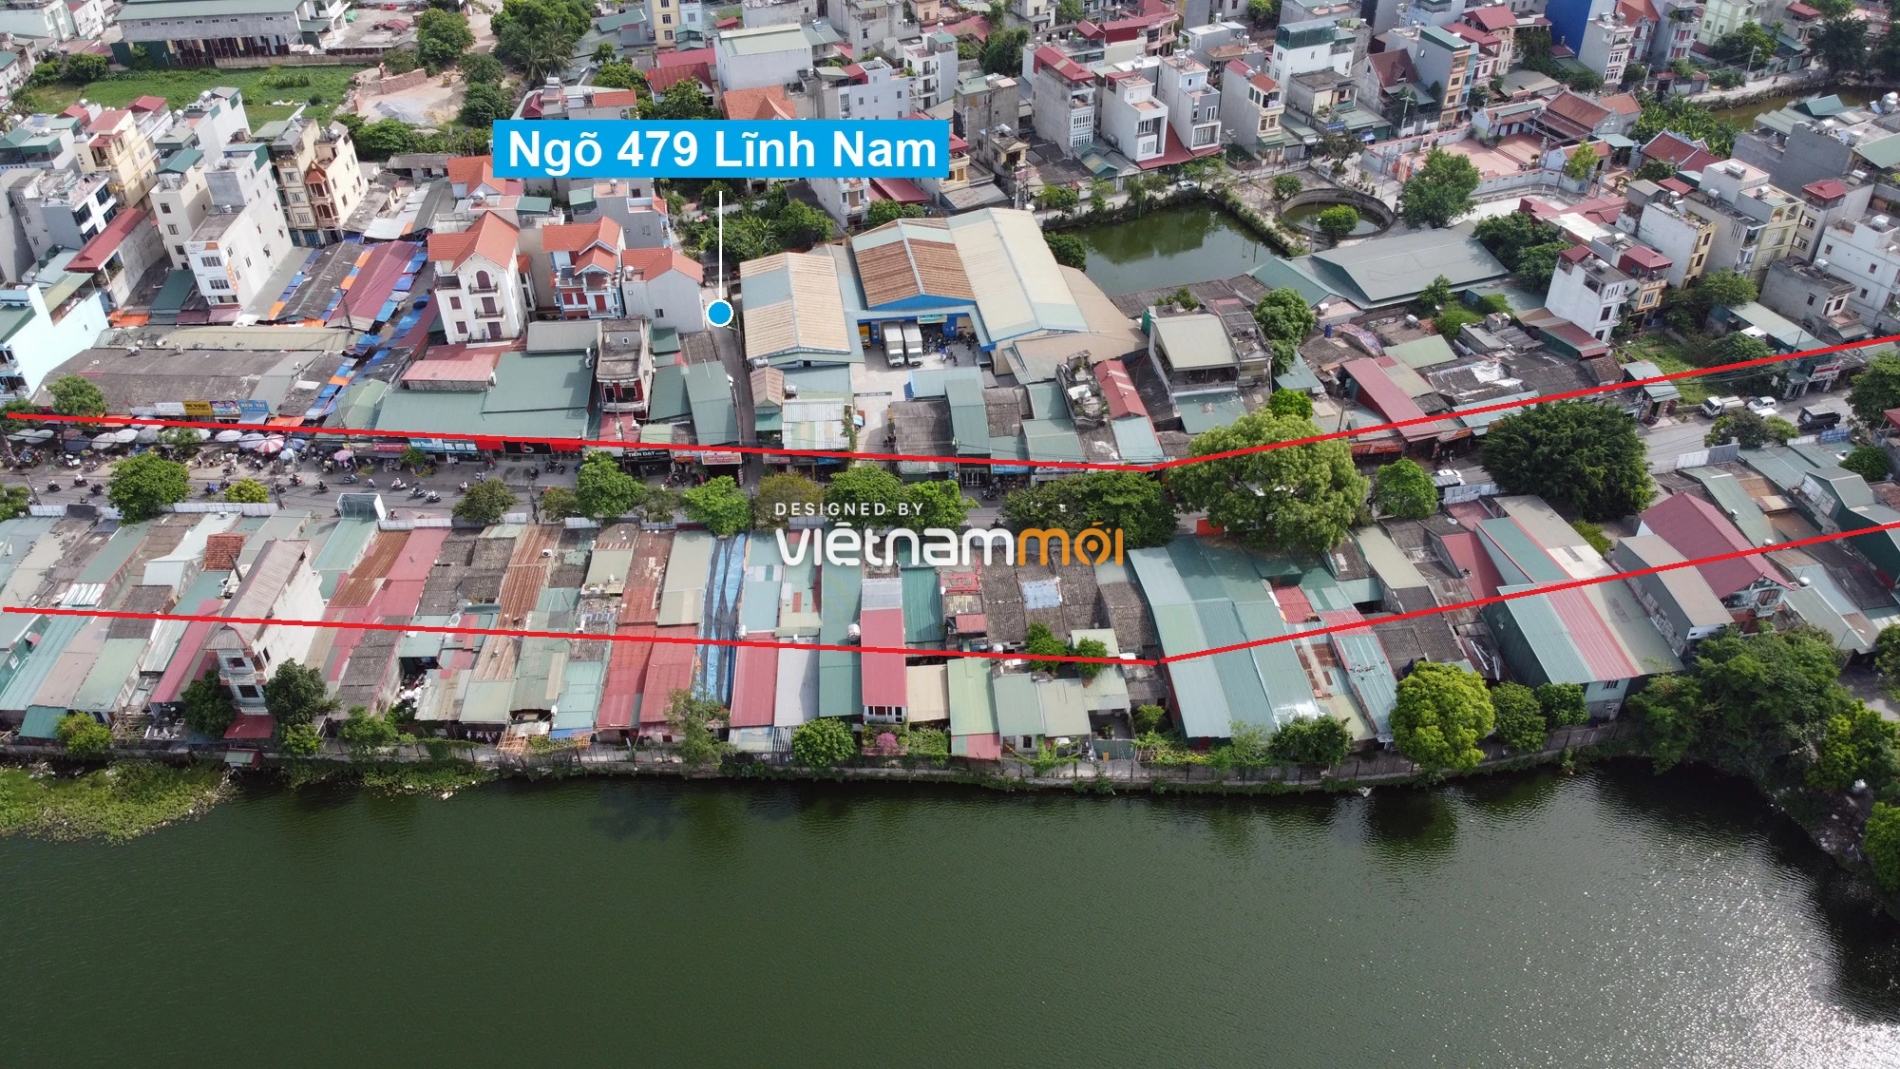 Những khu đất sắp thu hồi để mở đường ở quận Hoàng Mai, Hà Nội (phần 4) - Ảnh 14.